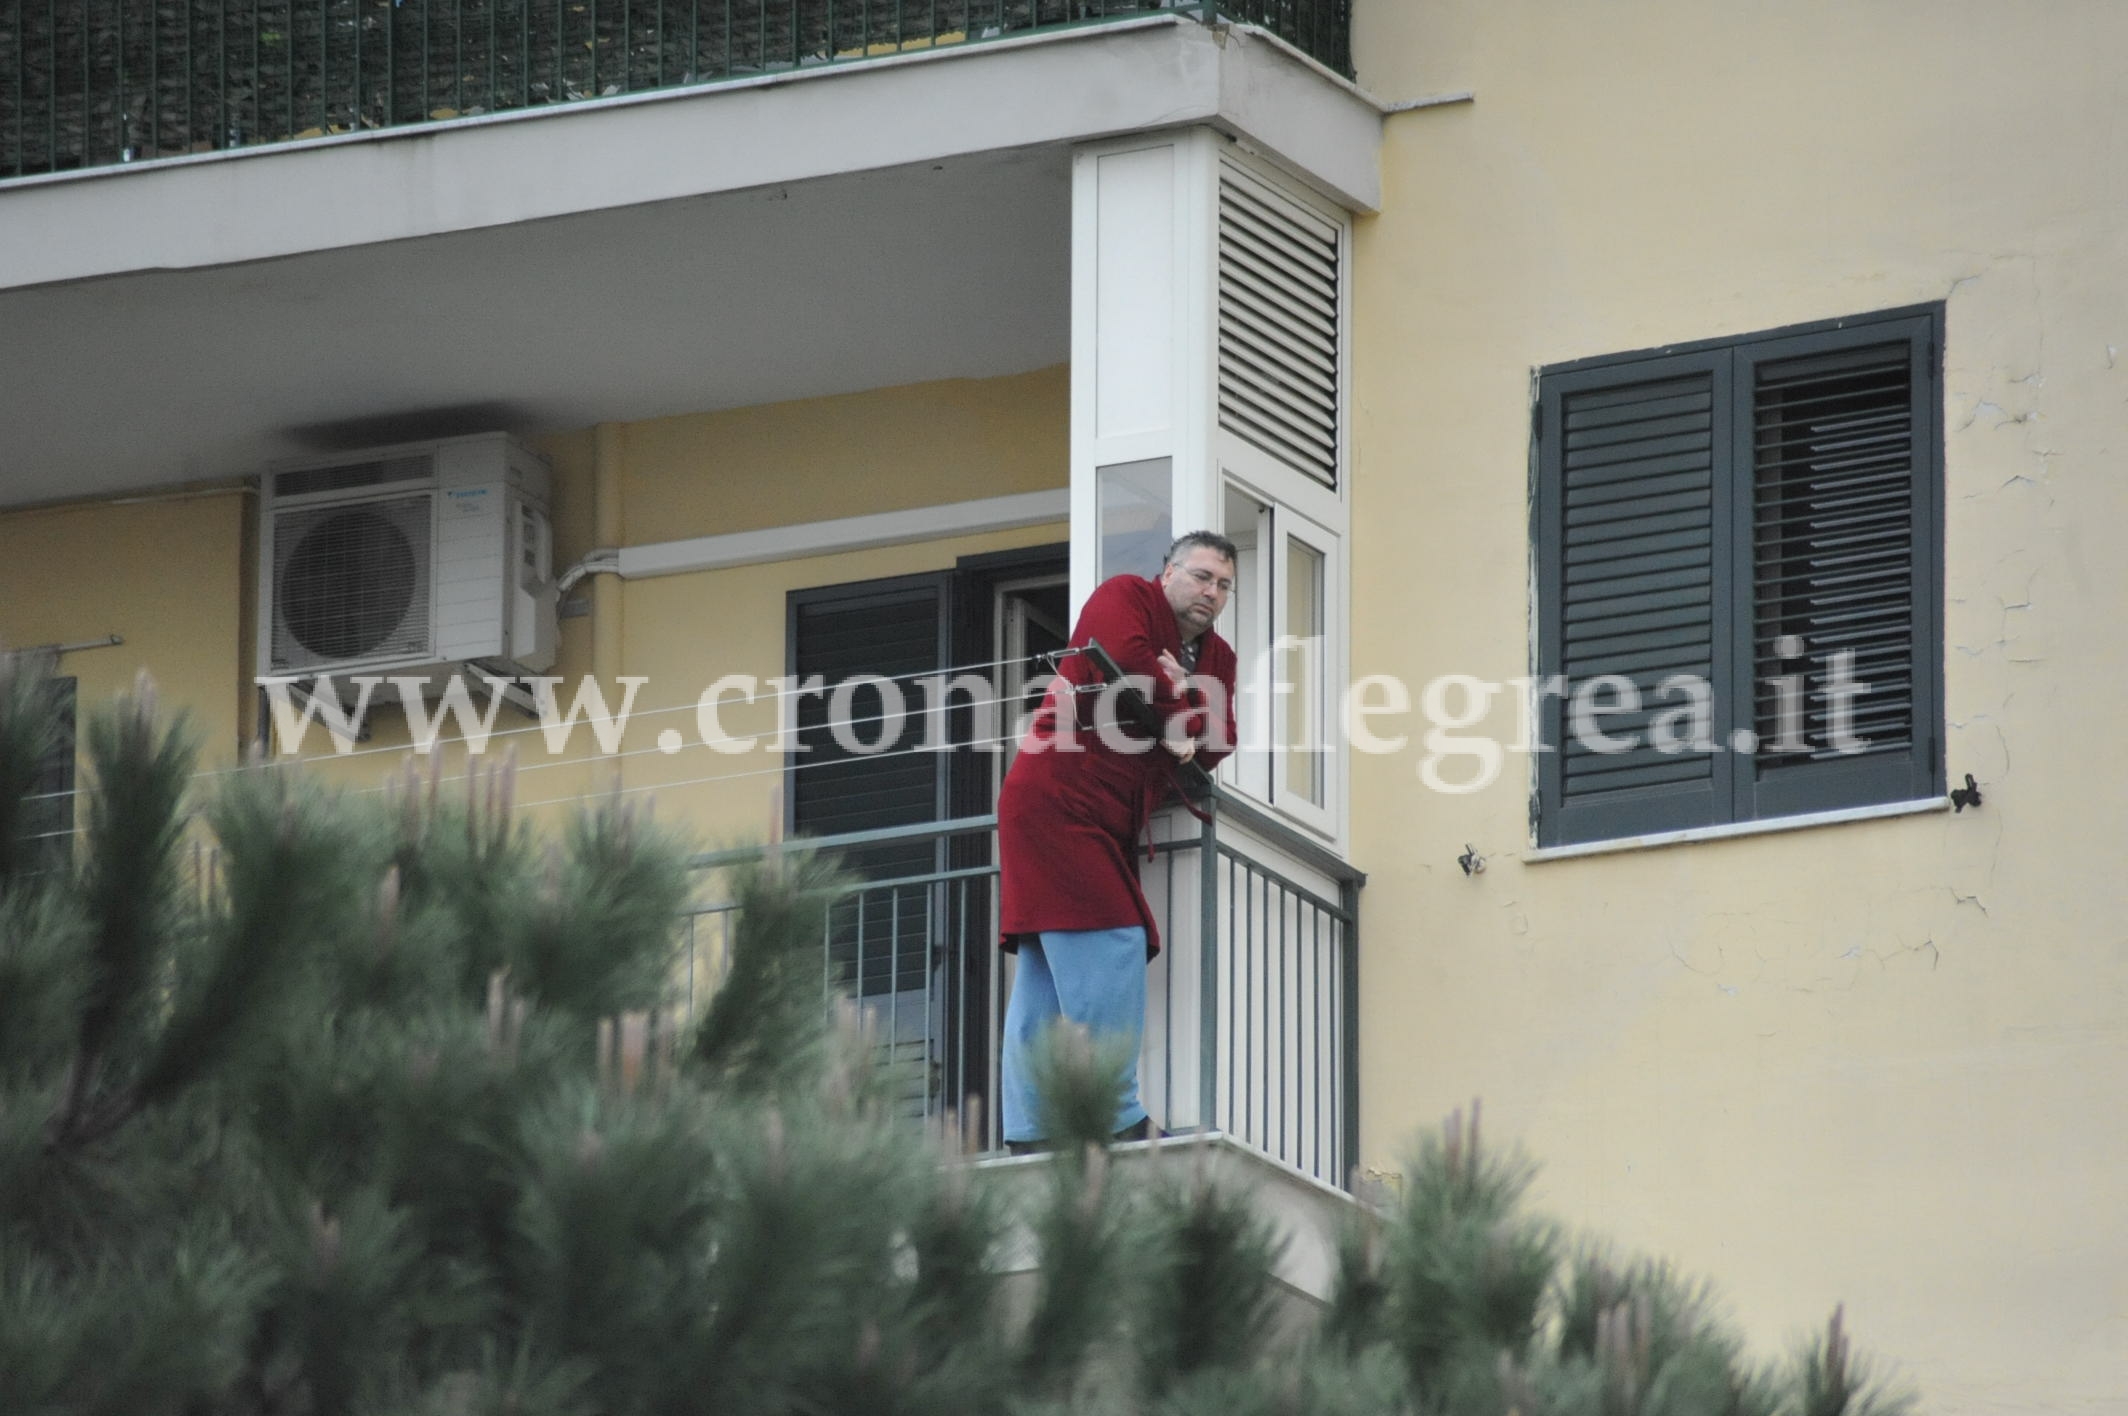 POZZUOLI/ Uomo sul cornicione minaccia di lanciarsi dal quarto piano – LE FOTO